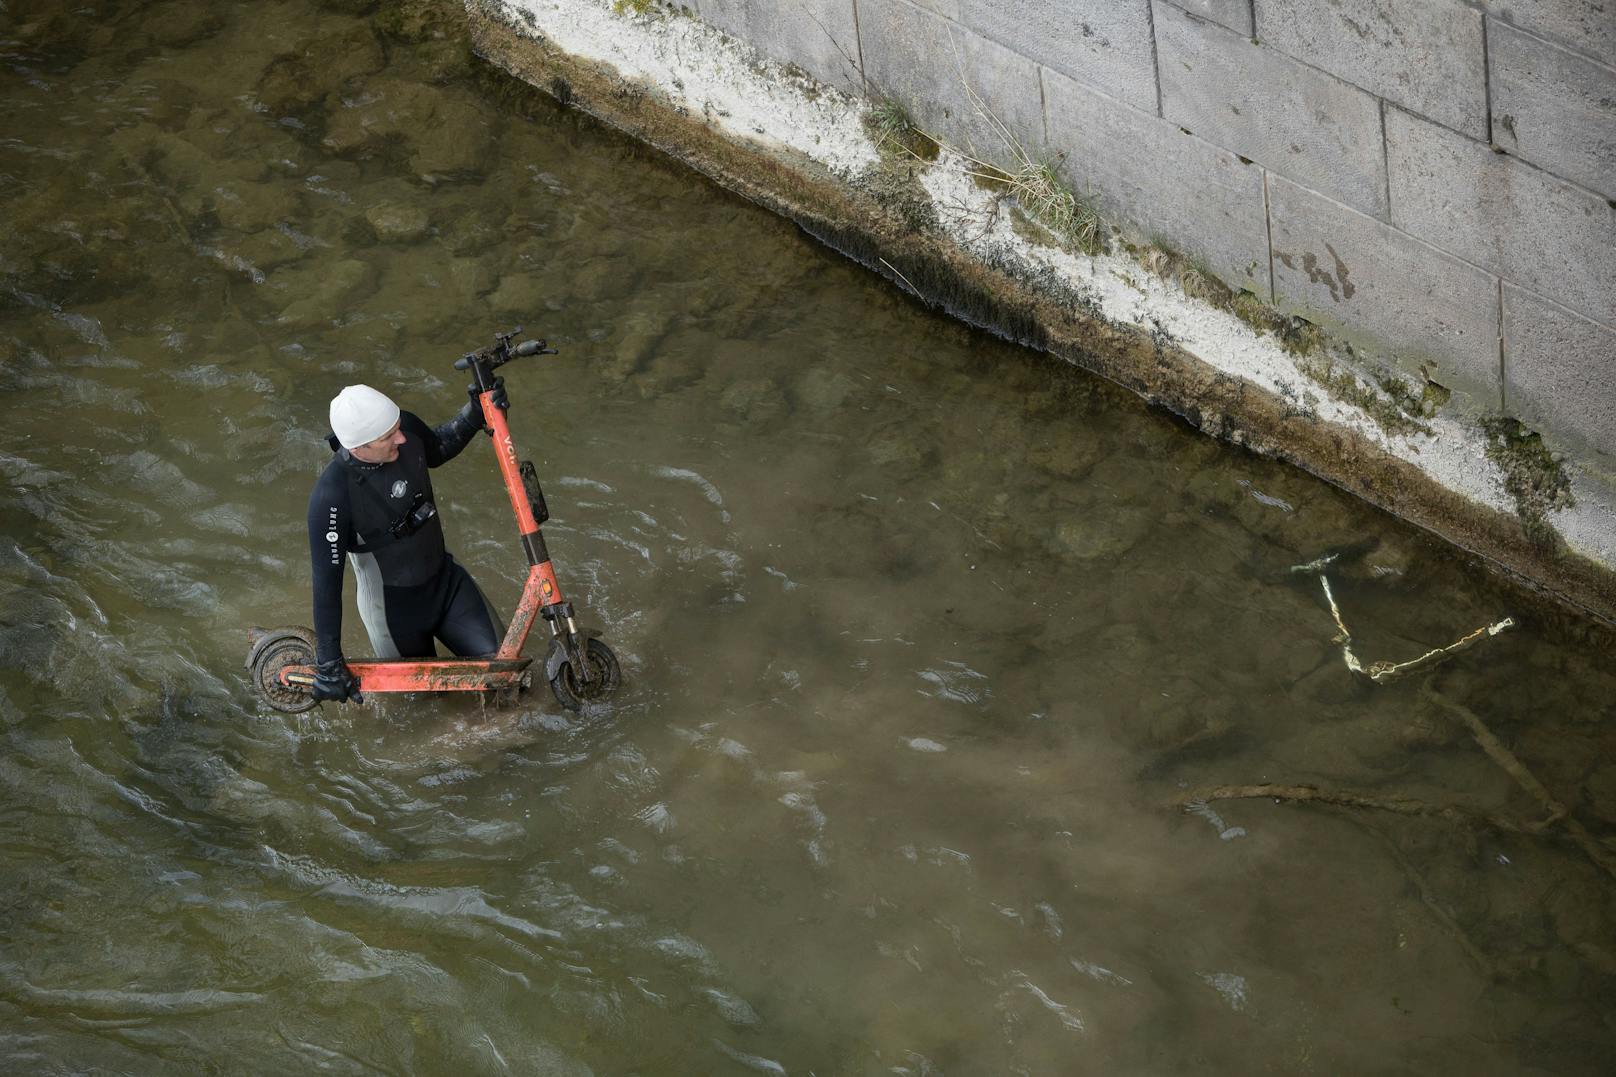 Taucher finden über 500 versenkte E-Scooter im Fluss